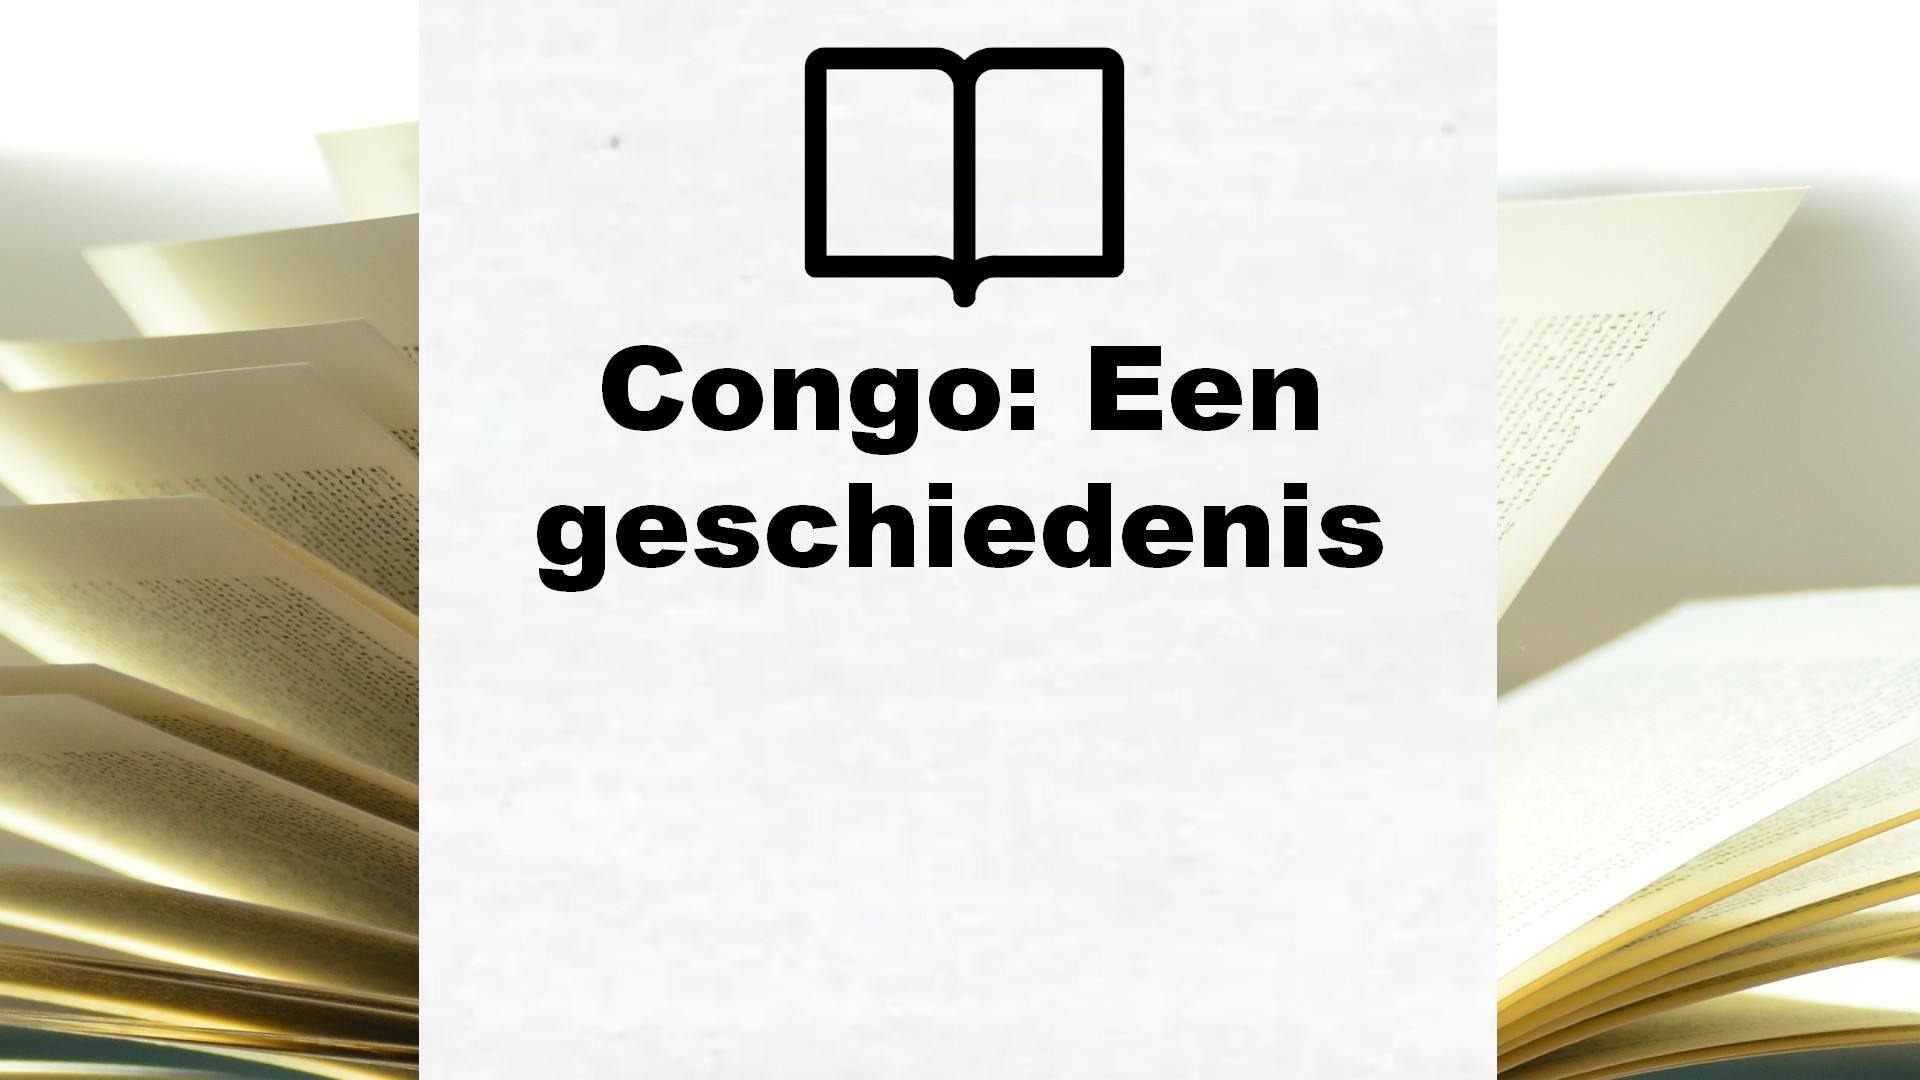 Congo: Een geschiedenis – Boekrecensie